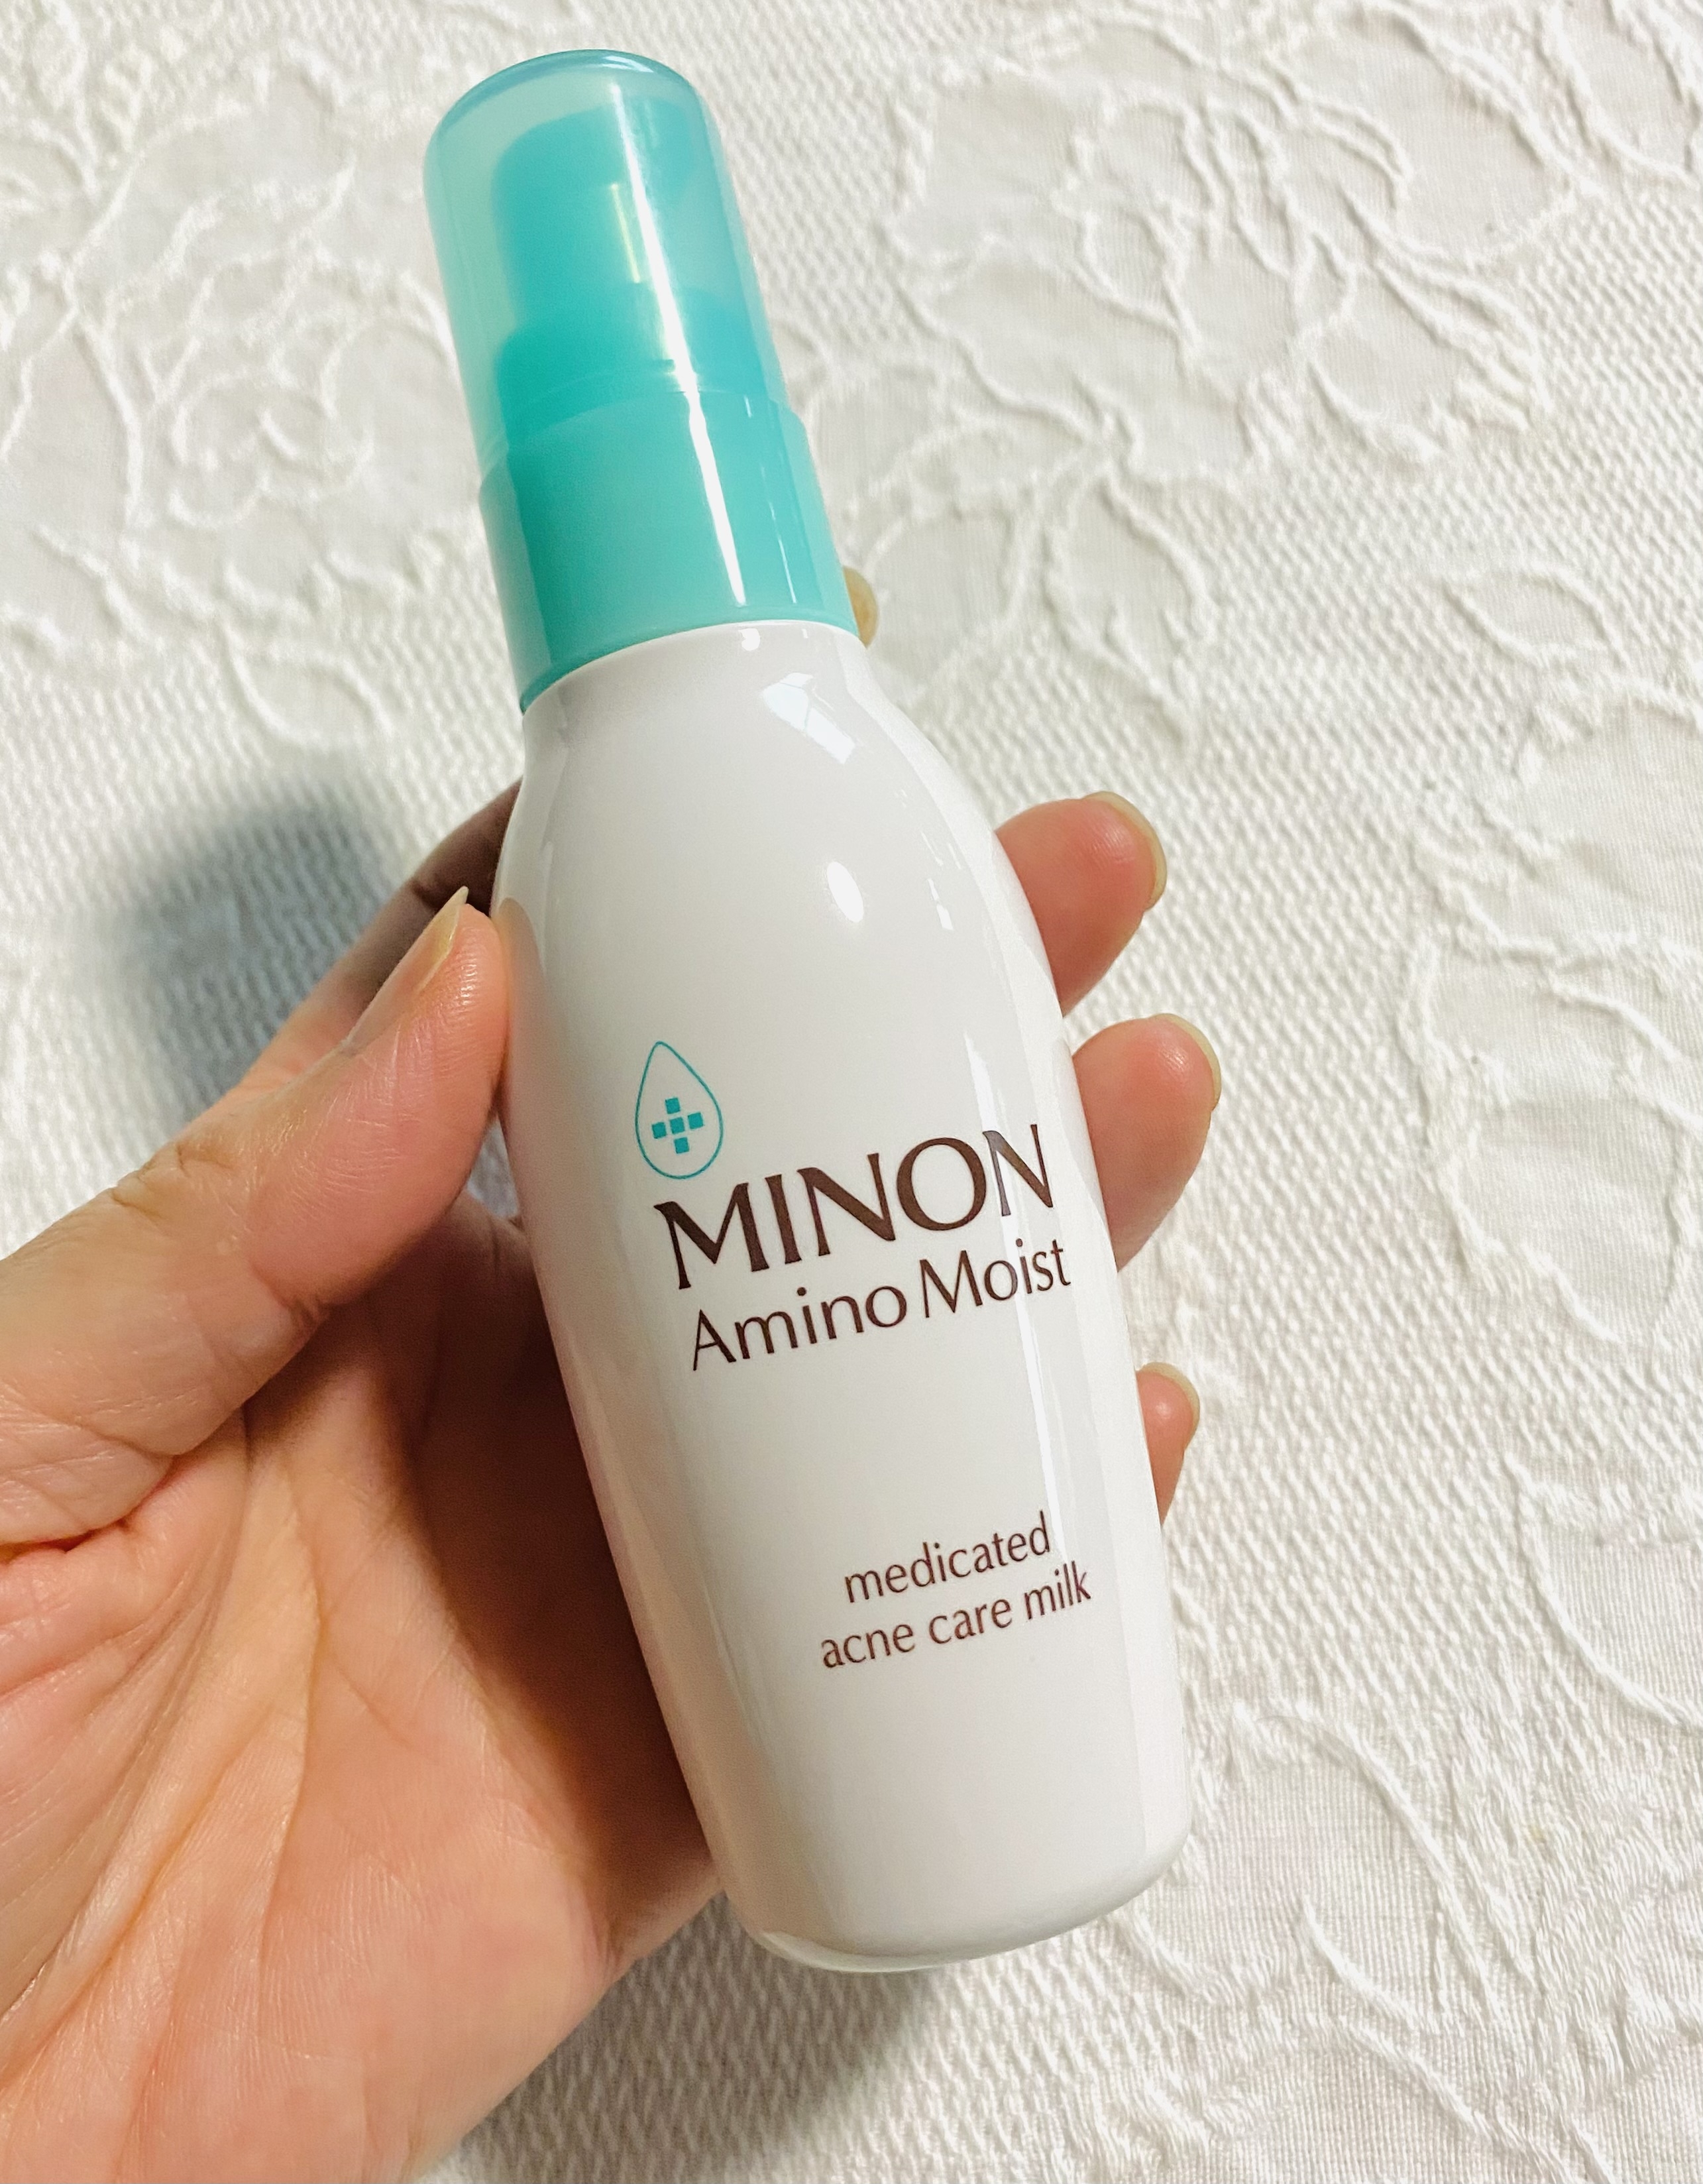 MINON(ミノン) アミノモイスト 薬用アクネケア ミルクの良い点・メリットに関するトラネコさんの口コミ画像3